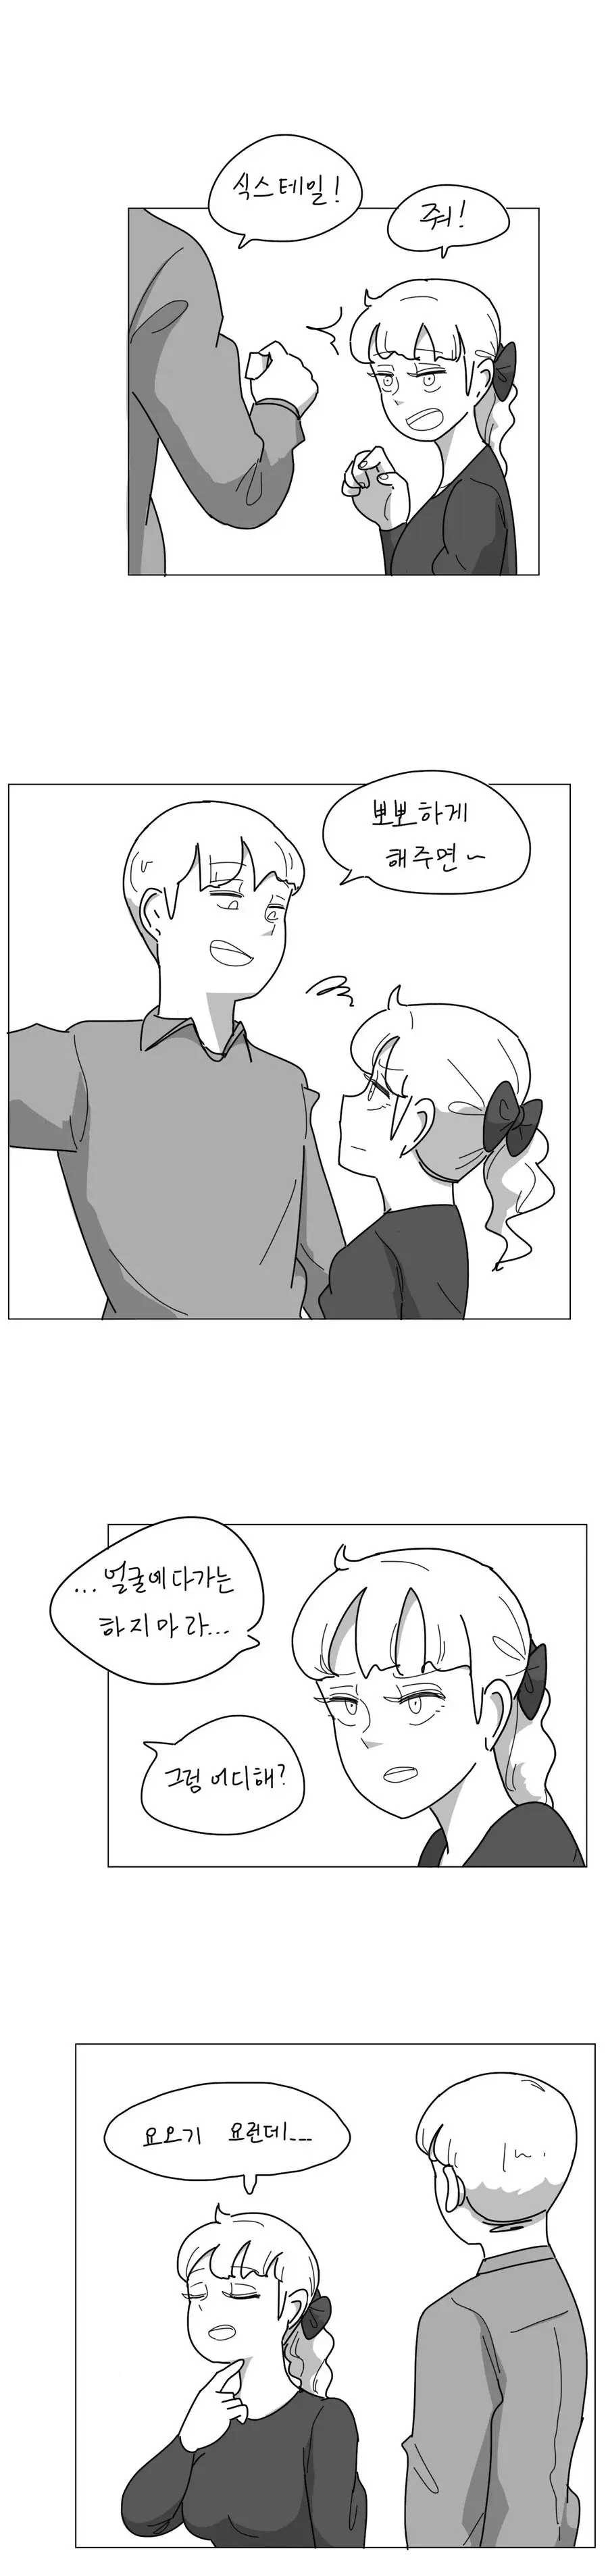 오싹오싹 누나가 포켓몬빵 사들고오는 만화.manhwa | mbong.kr 엠봉